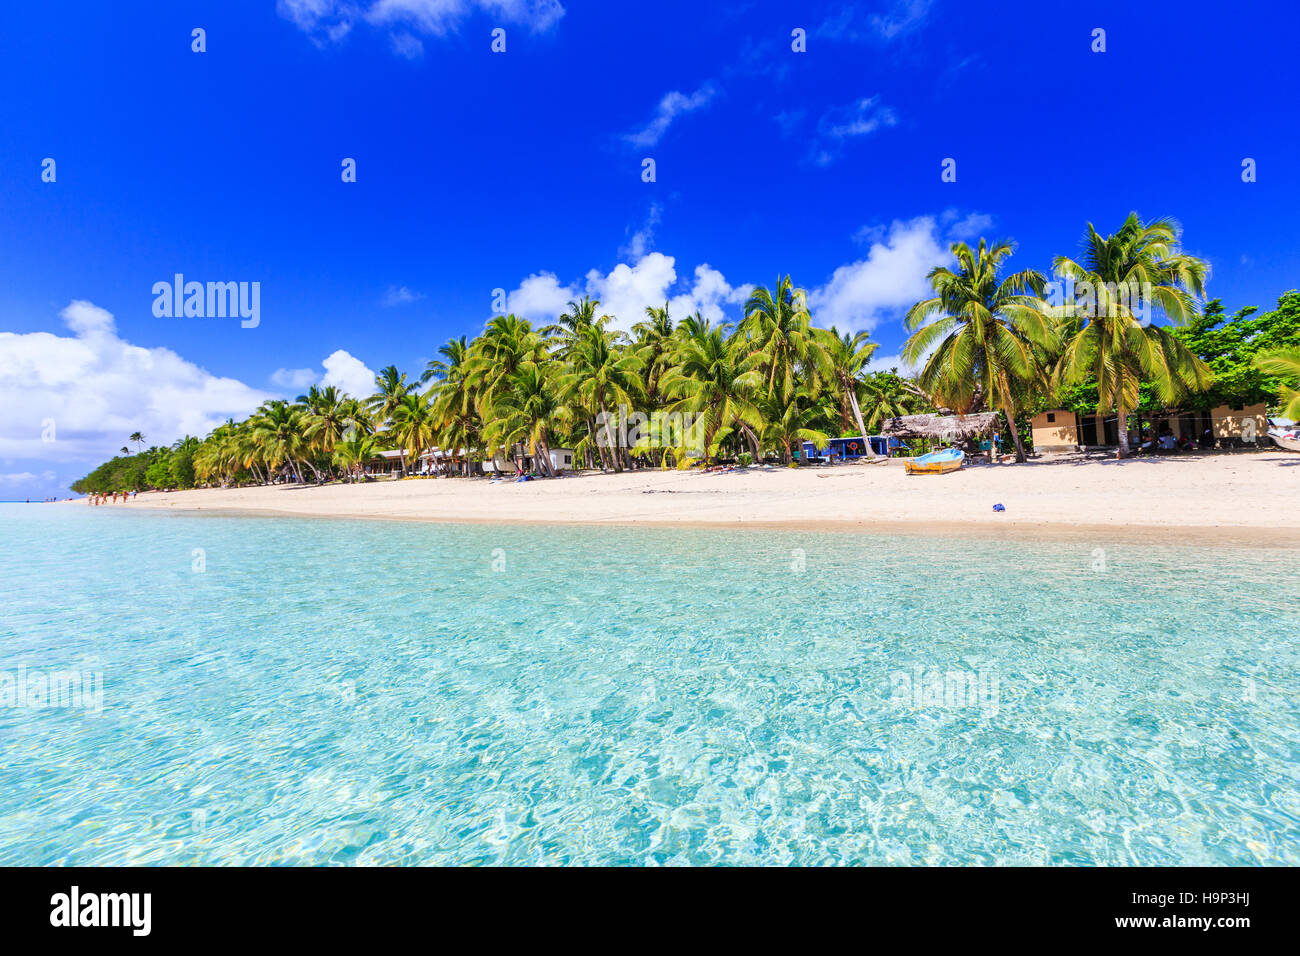 Strand auf einer tropischen Insel mit klarem, blauem Wasser. Dravuni Island, Fidschi. Stockfoto